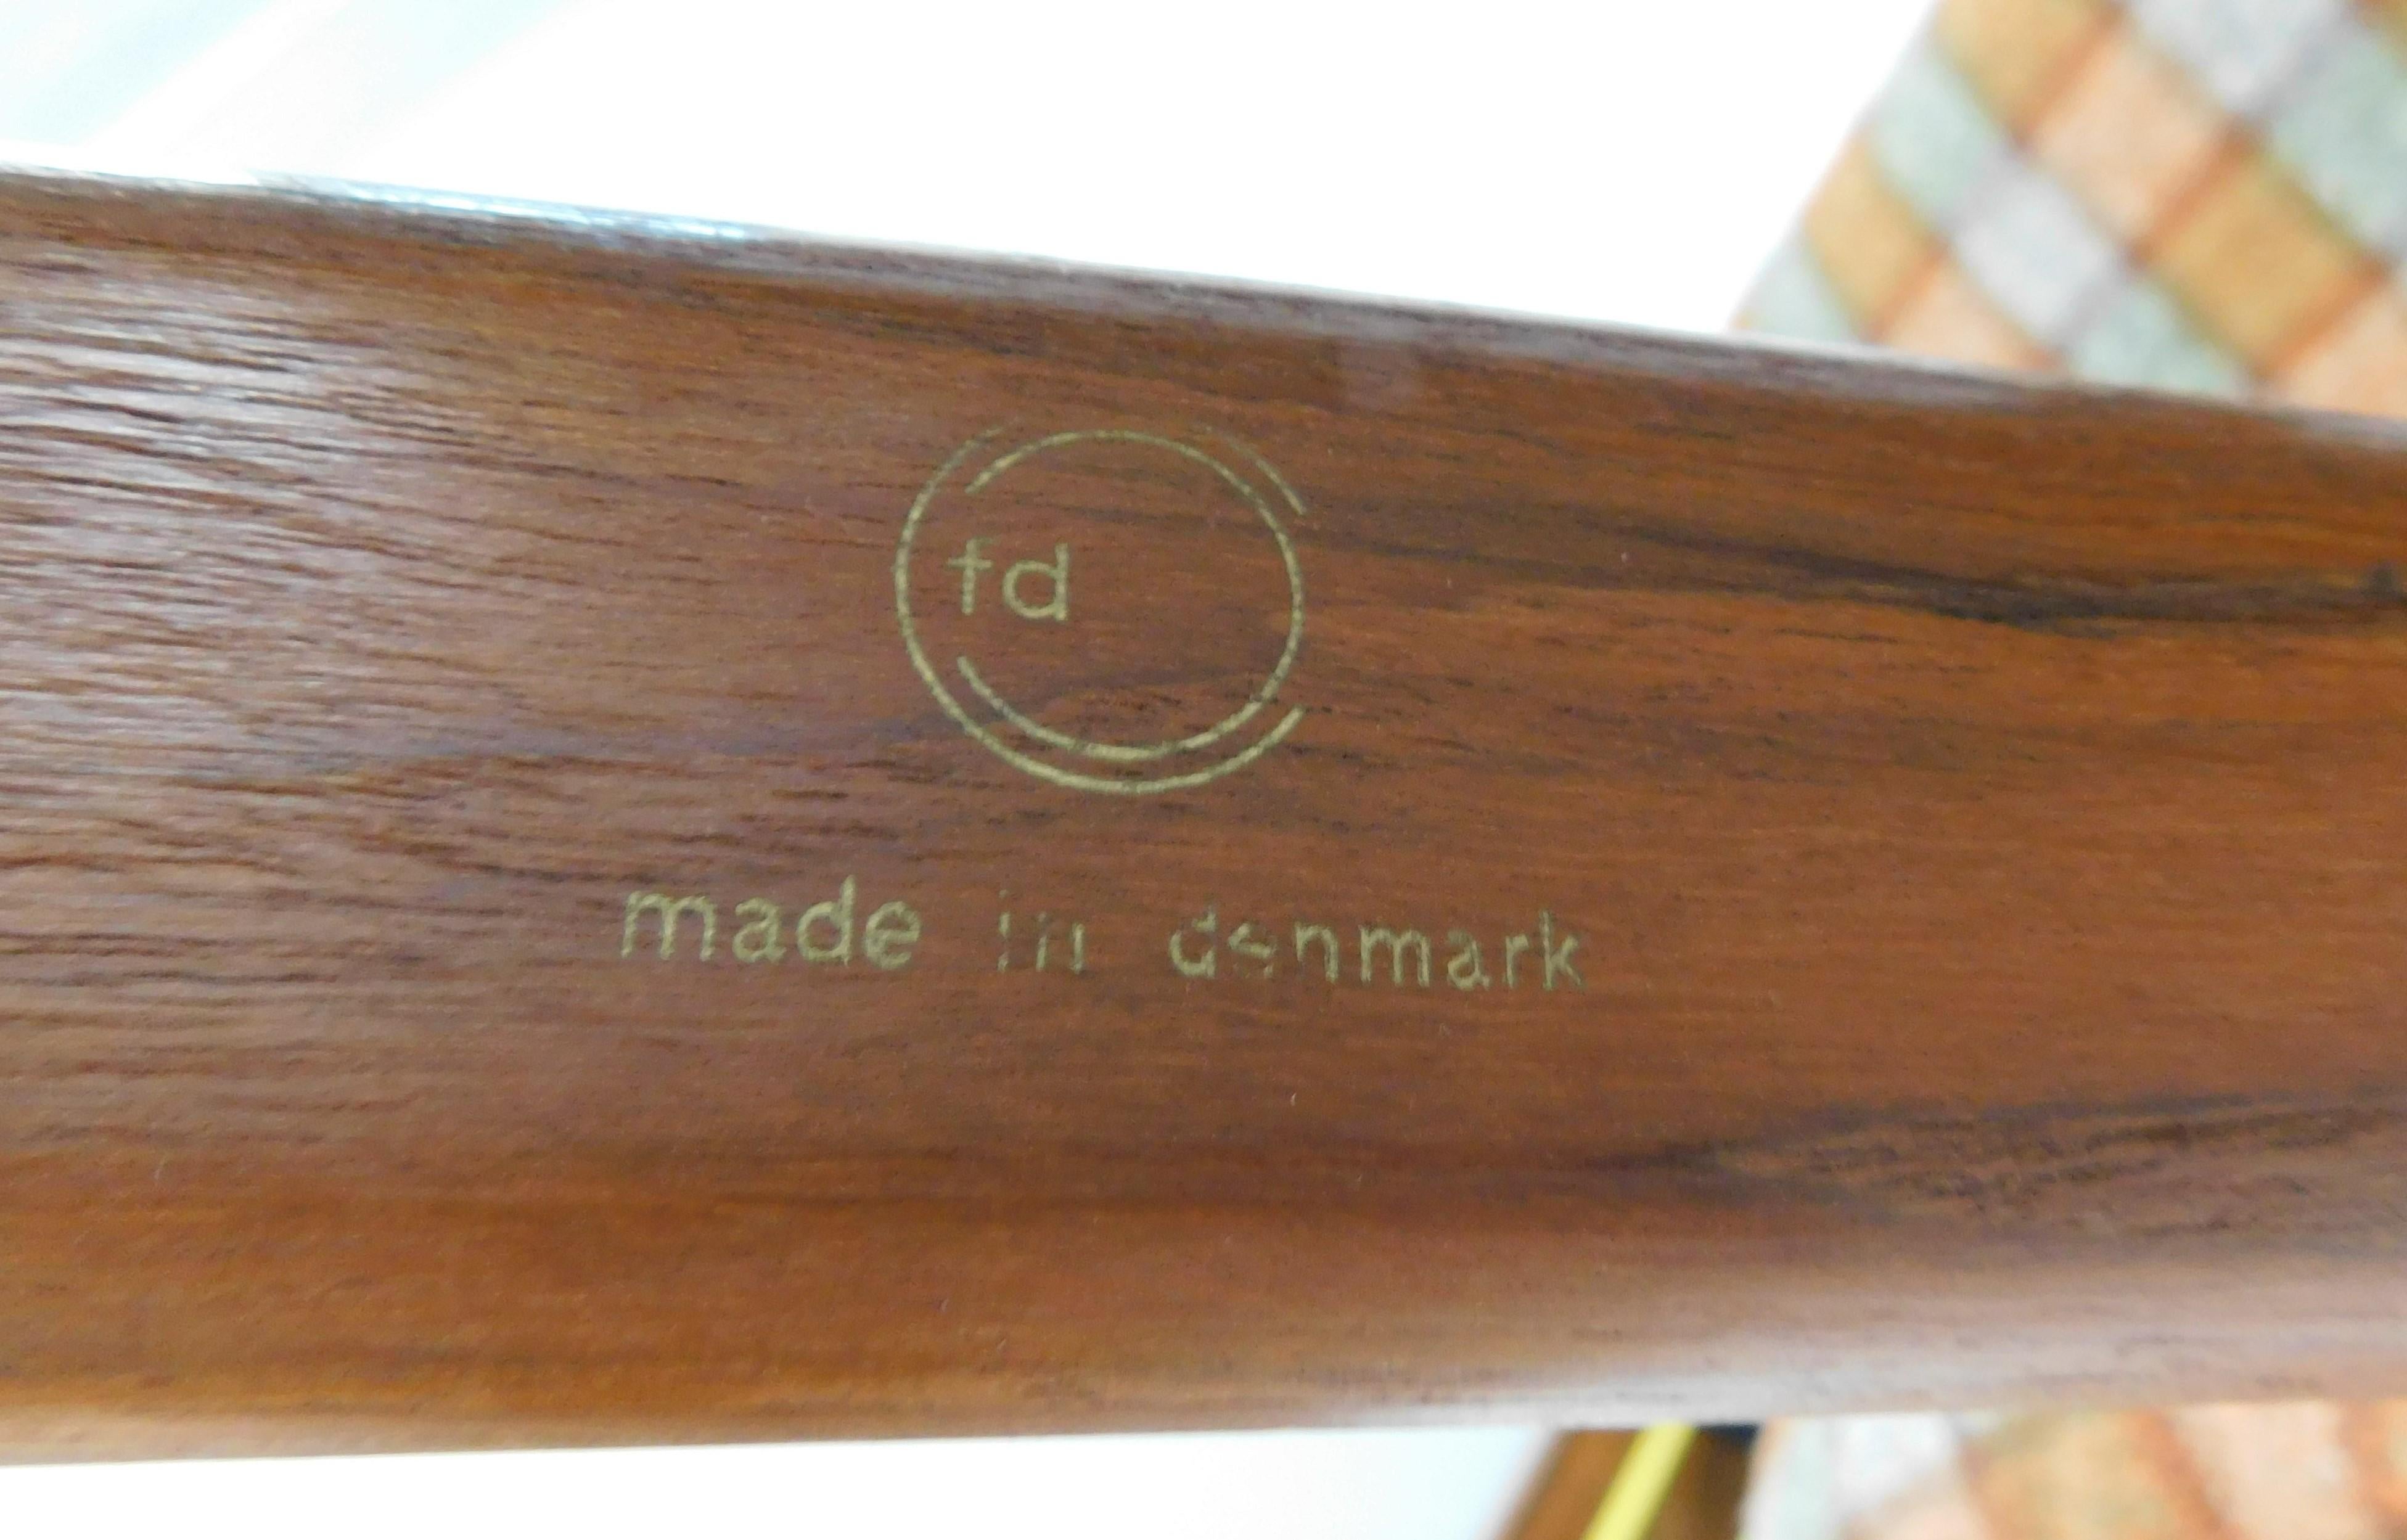 Pair of Finn Juhl 1953 Spade Teak Lounge Chair by France & Daverkosen Denmark 4